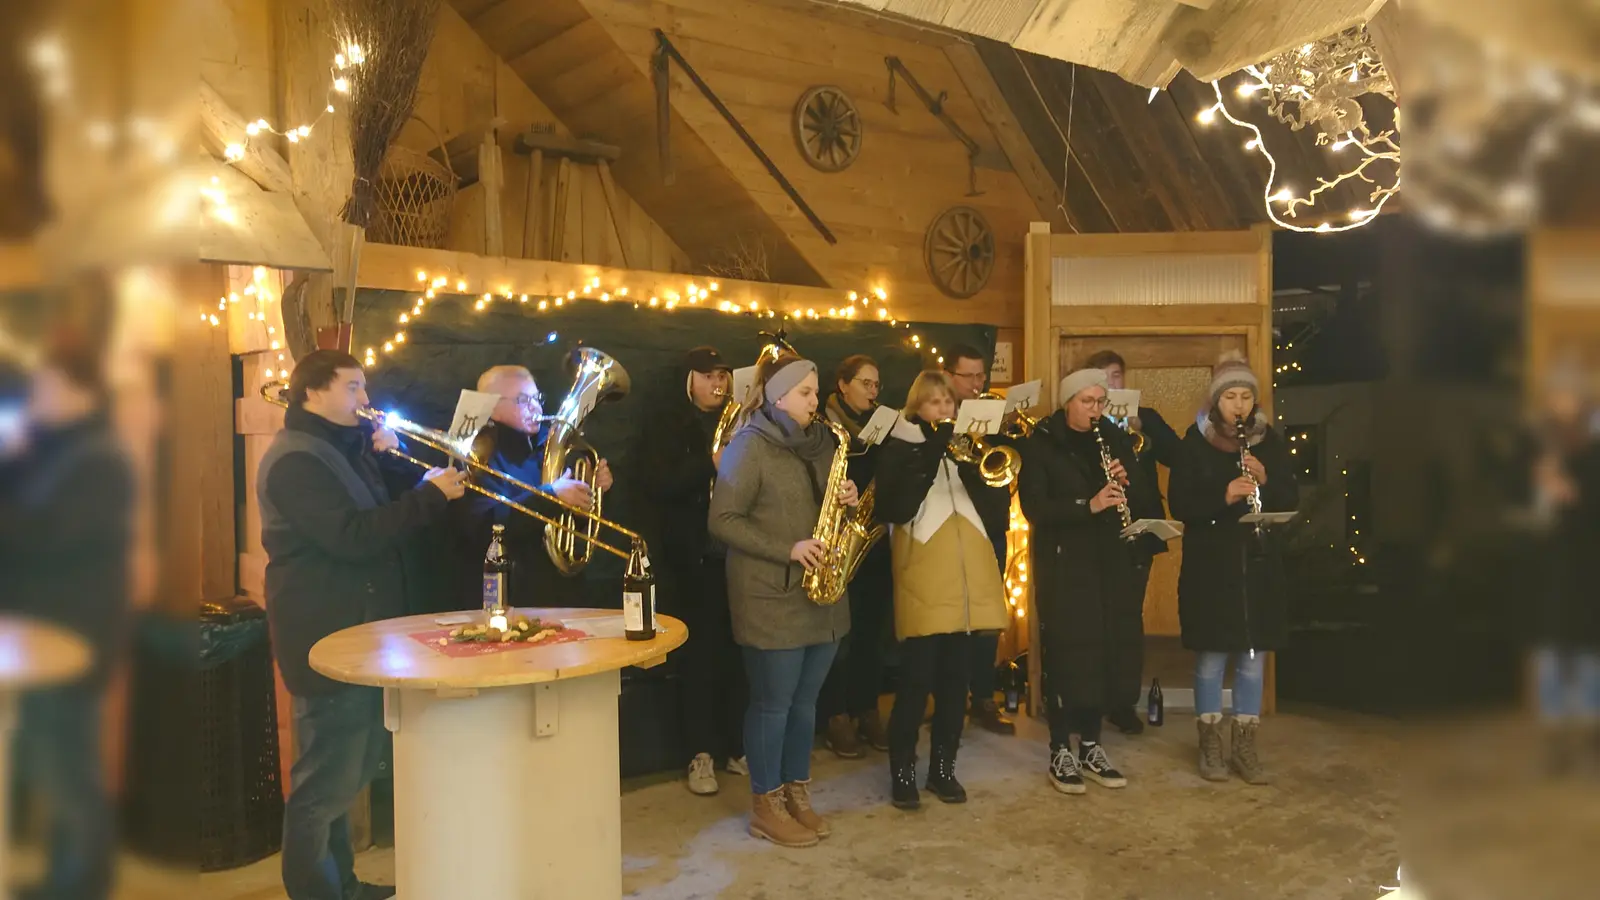 Die kleine Besetzung der Blaskapelle Gleiritsch sorgt mit weihnachtlichen Melodien für angenehme Stimmung (Bild: sgs)